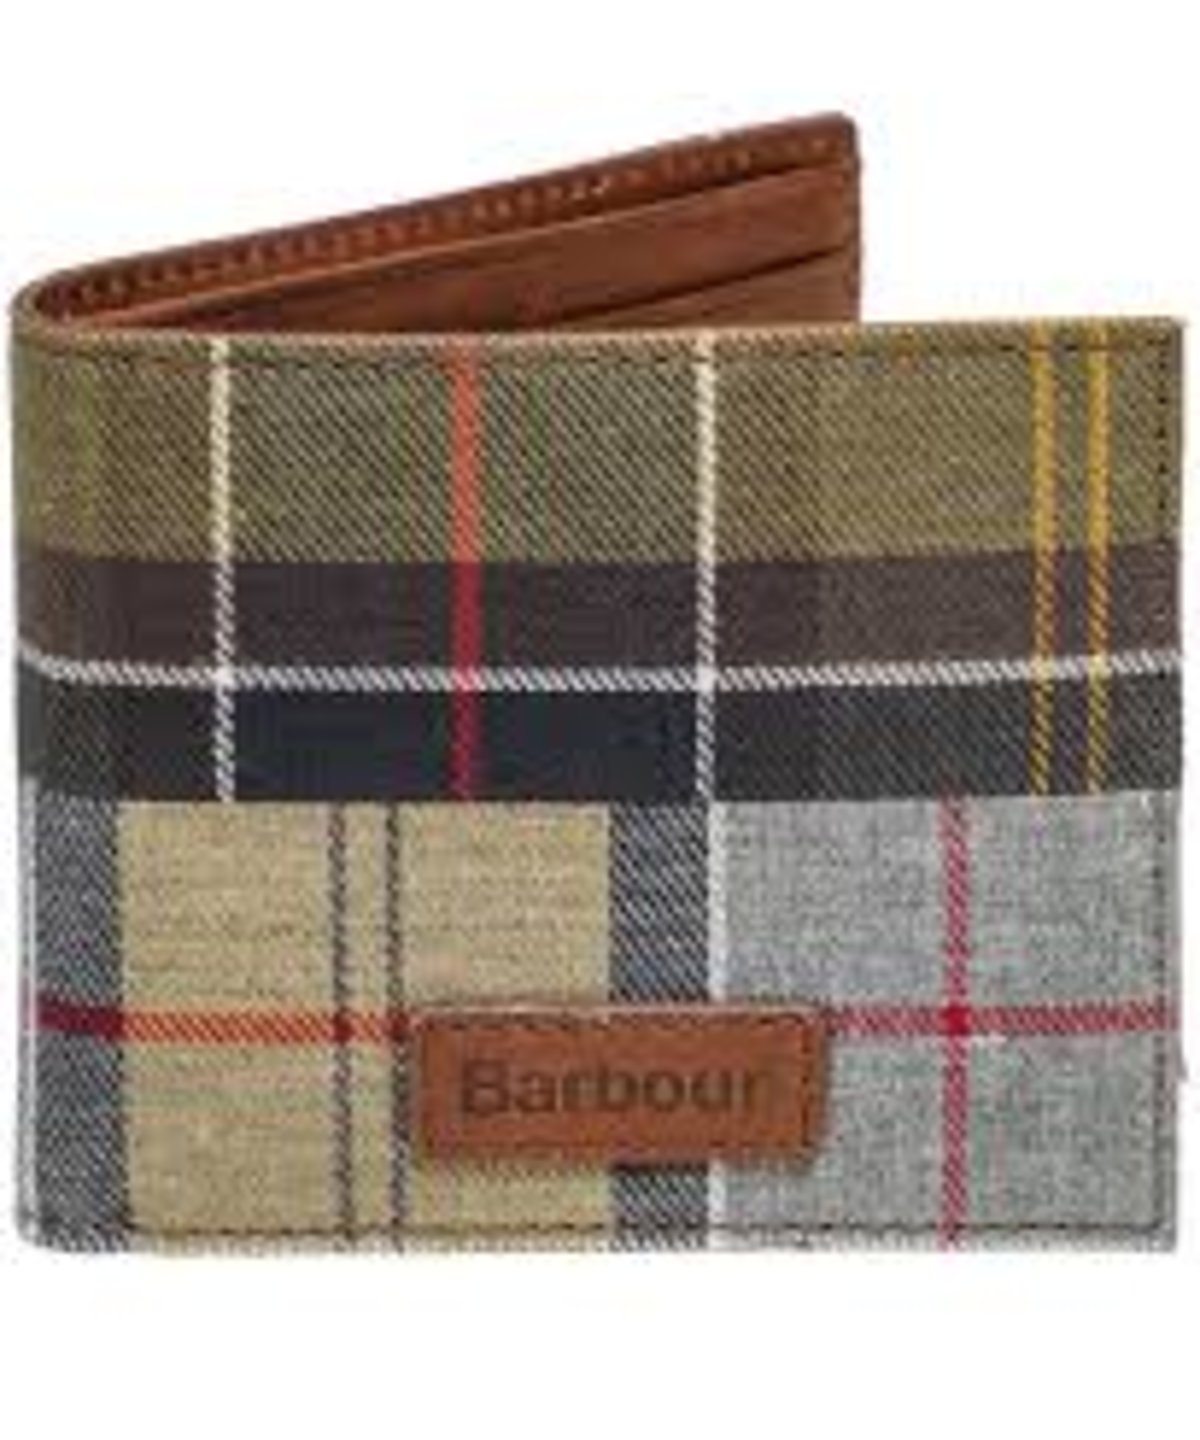 Barbour Mixed Tartan Billfold Wallet